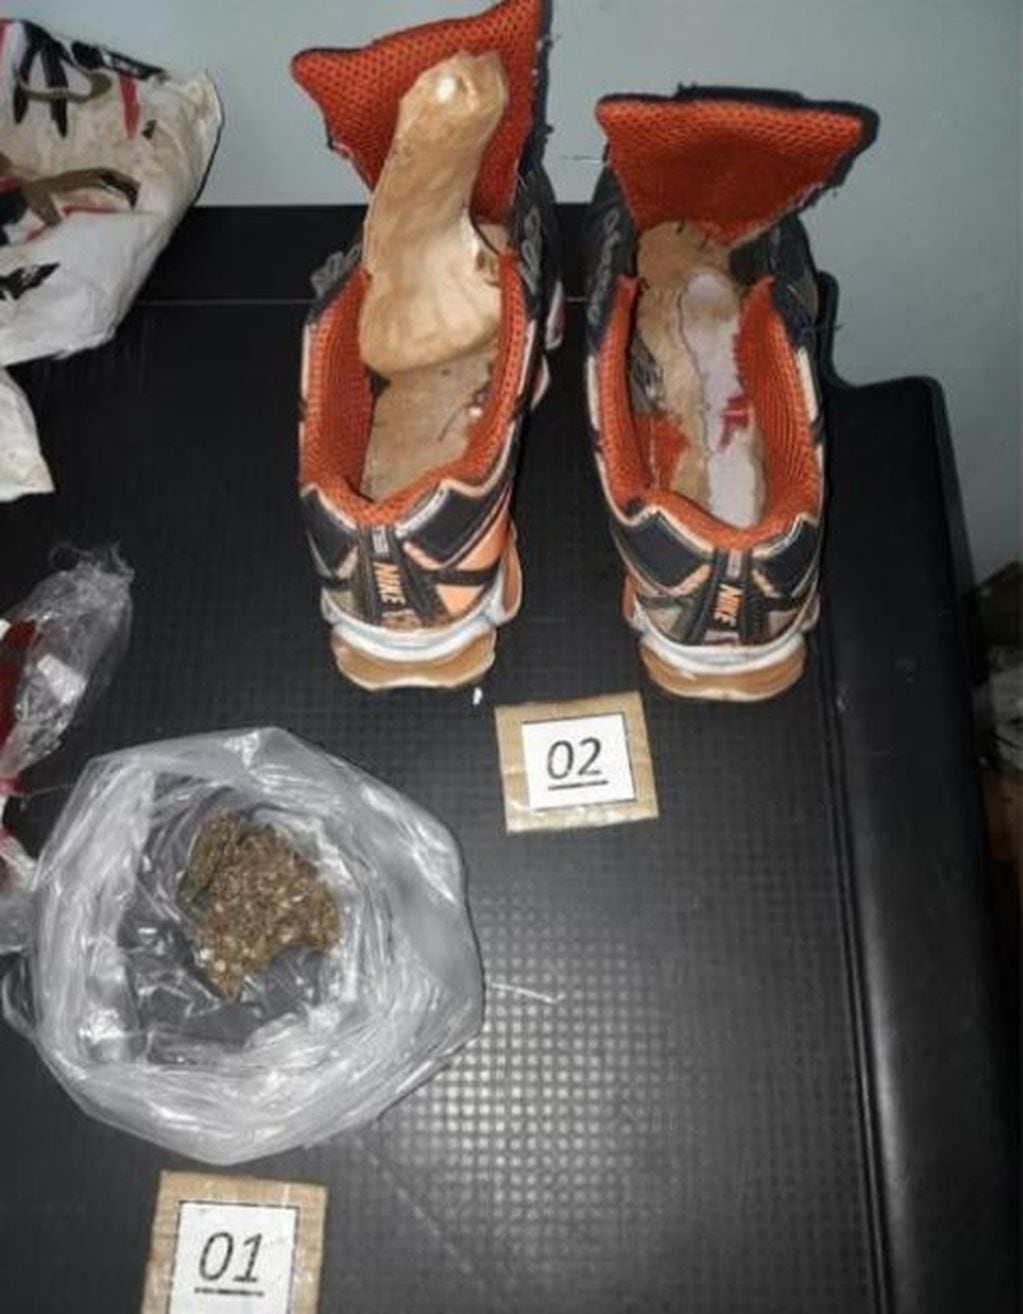 Quiso pasar marihuana oculta en zapatillas para su cuñado preso. (Foto: Policía de Misiones)